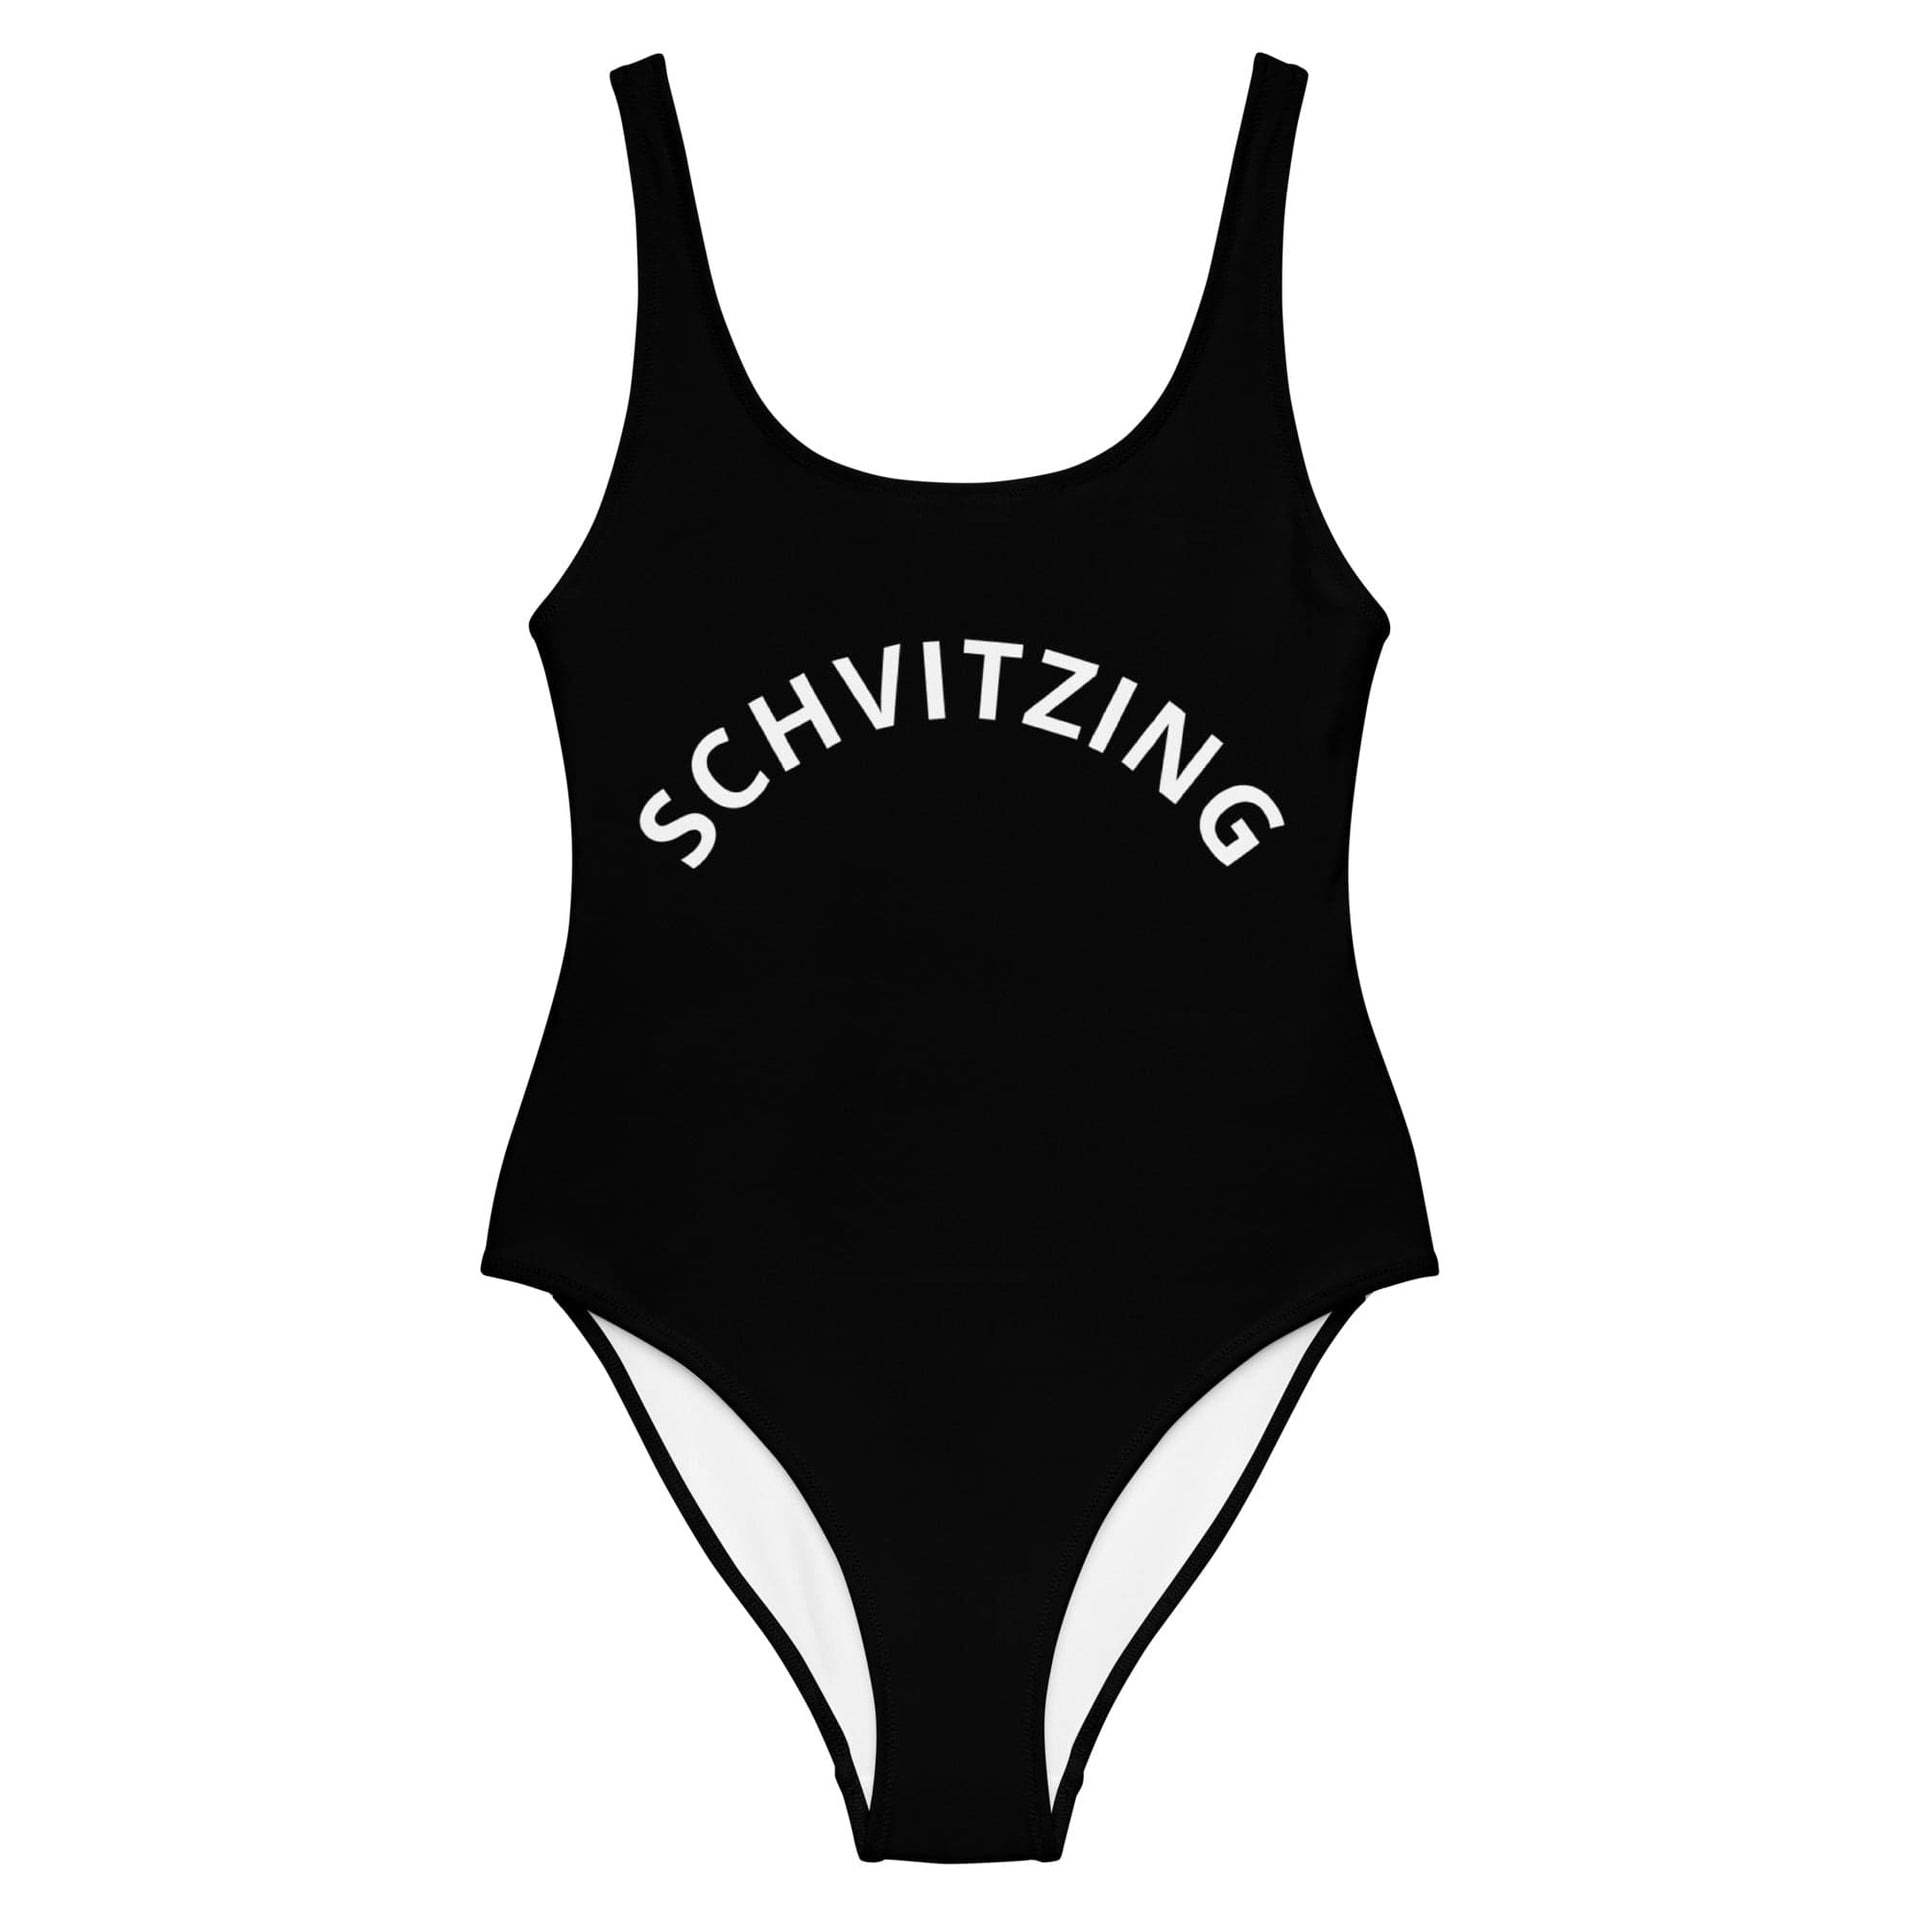 ModernTribe Swimwear XS Schvitzing One-Piece Swimsuit (Sizes XS - 3XL)